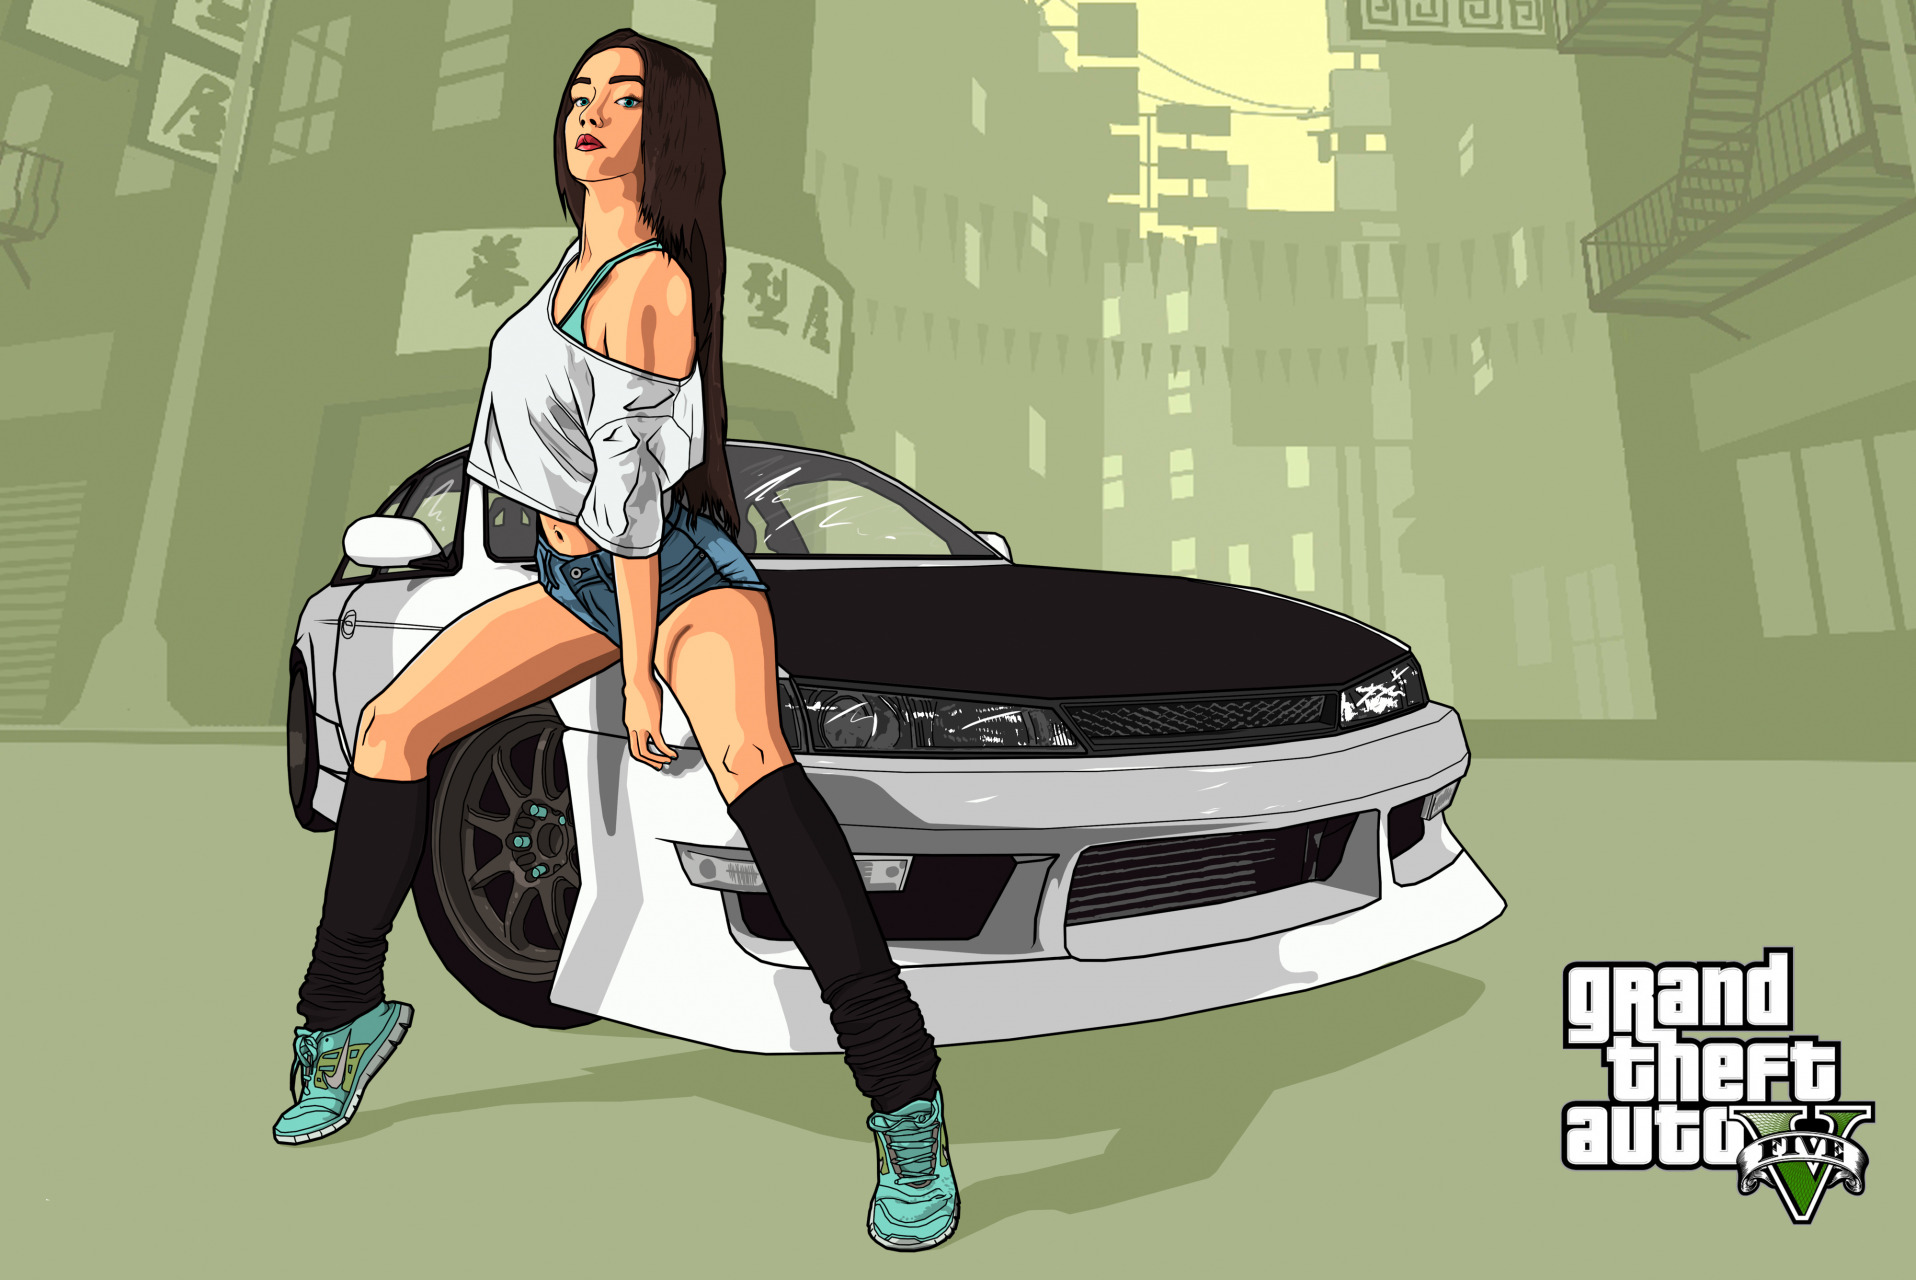 General 1916x1280 video games sports car digital art brunette women looking at viewer video game art fan art Grand Theft Auto V